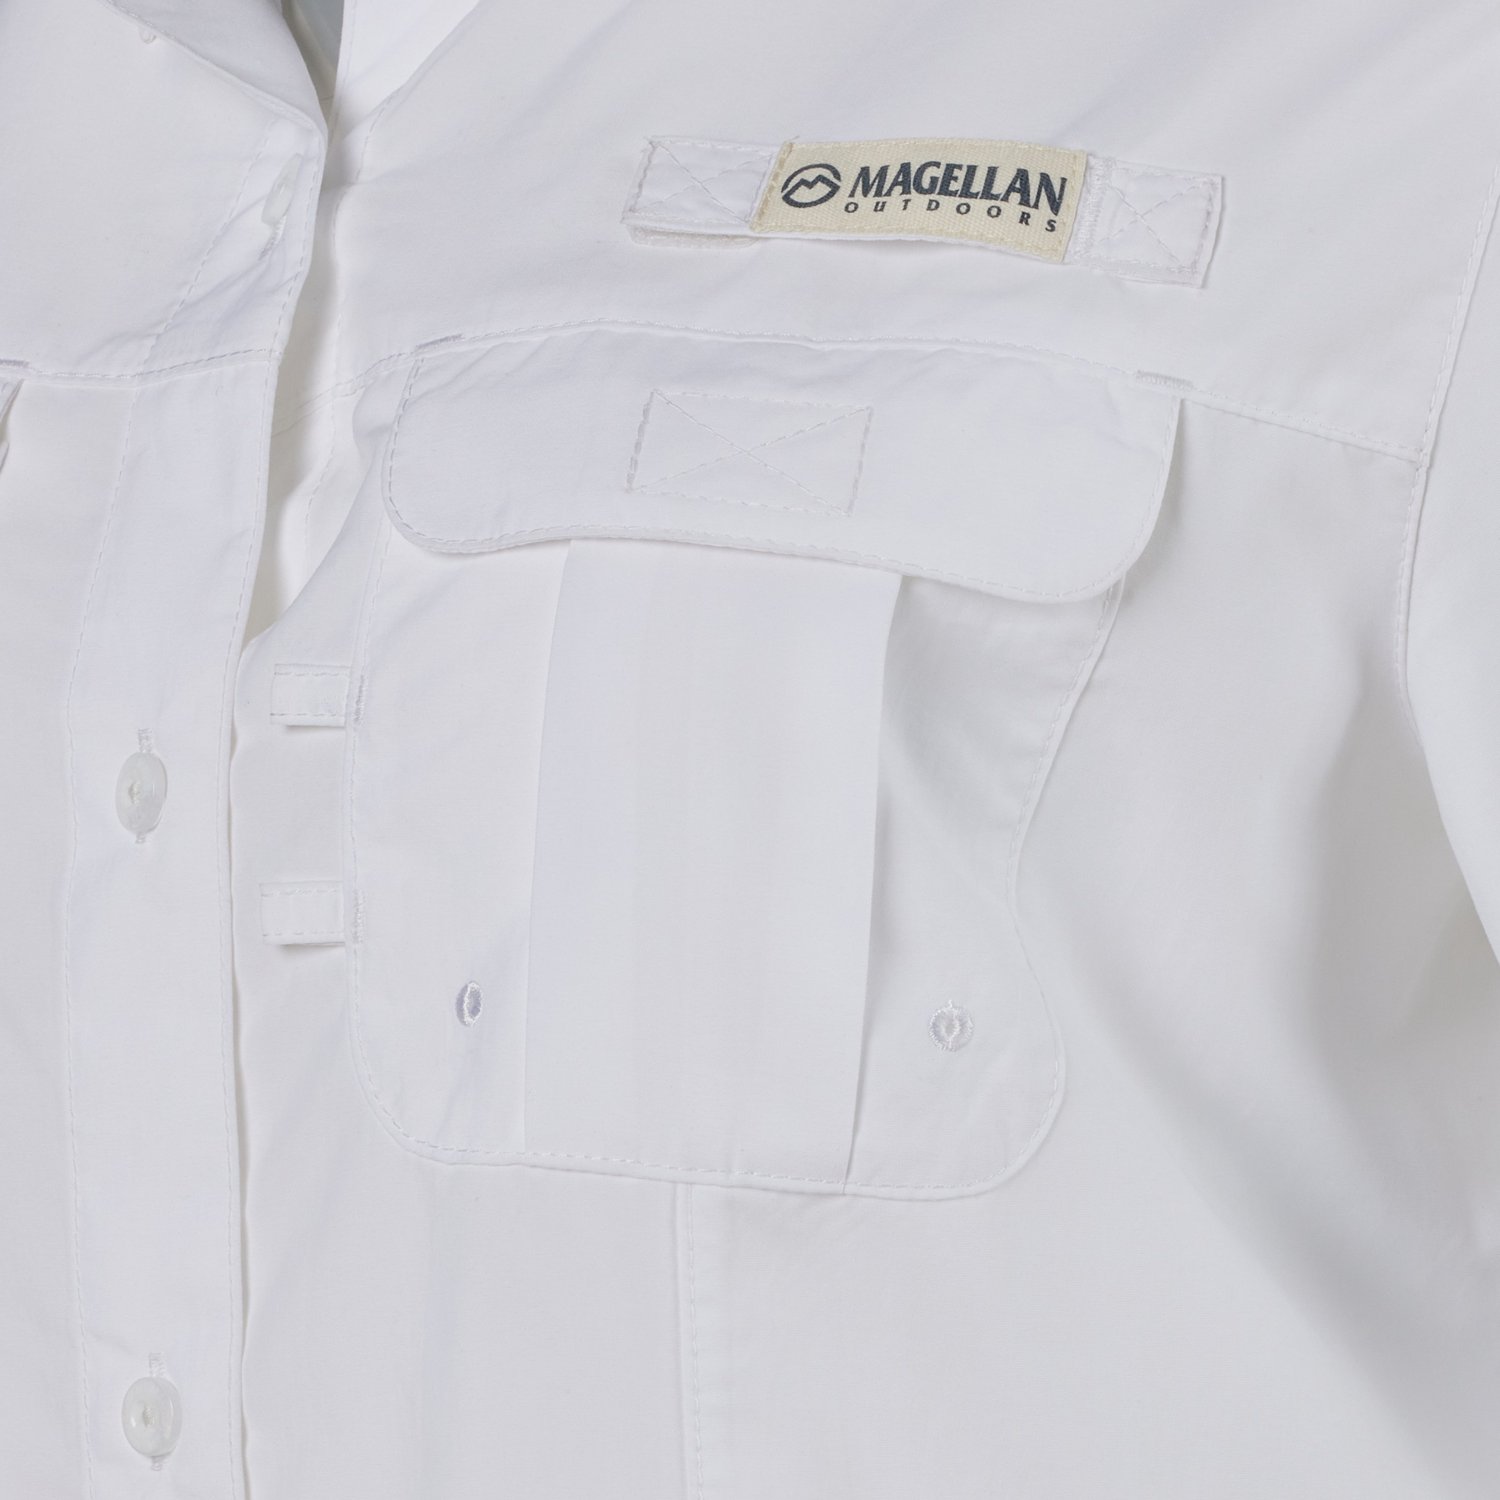 Magellan Outdoors Women's Fishing Shirt- size XS Aqua Green Short Sleeve  Pockets